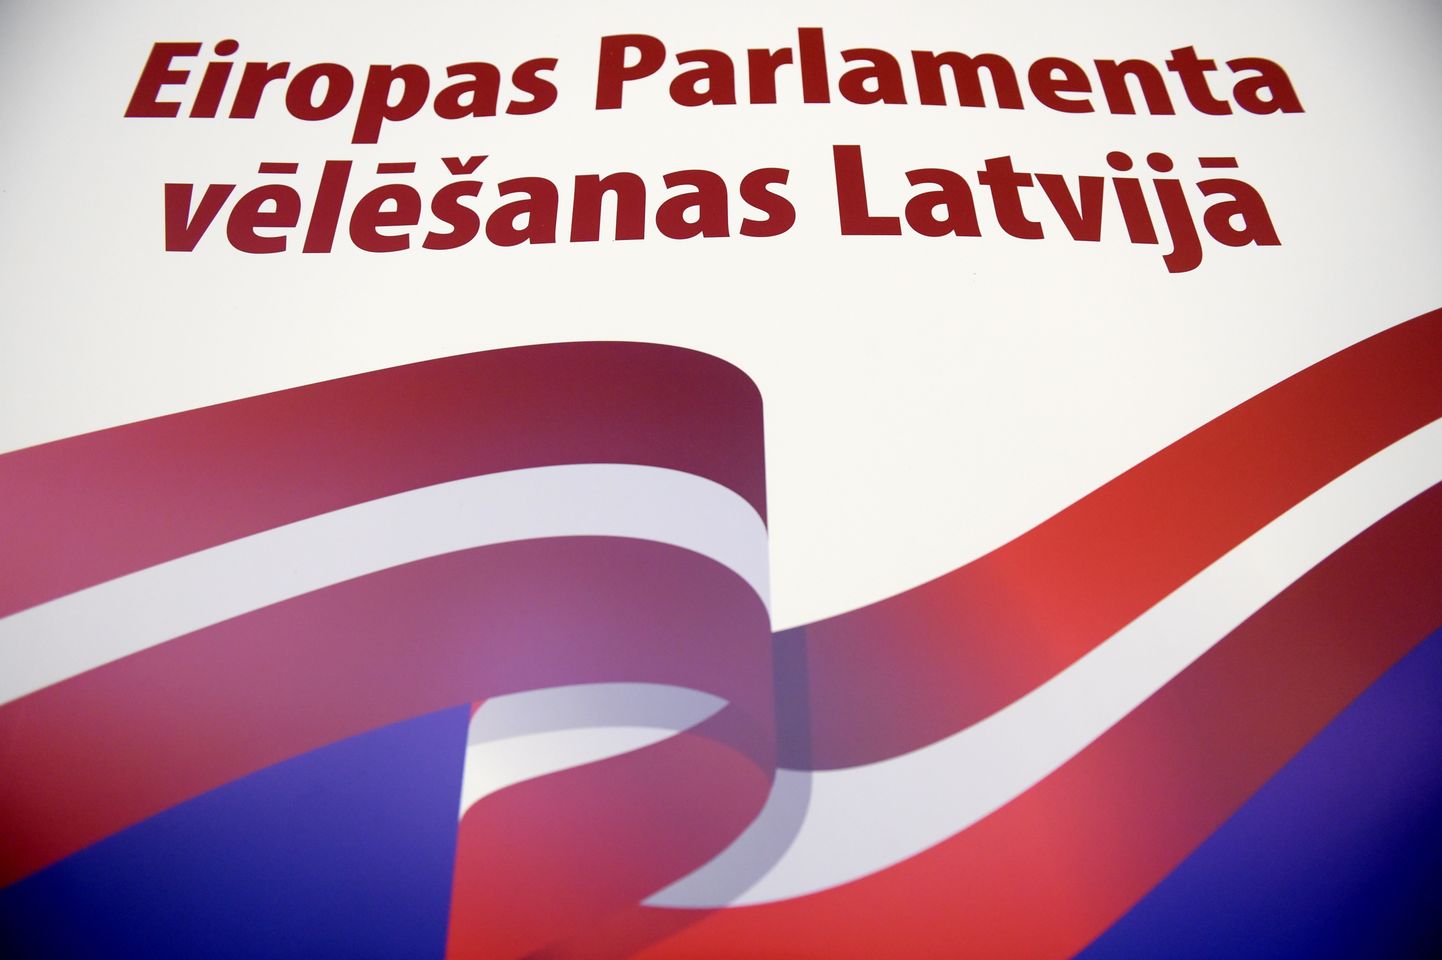 Плакат выборов в Европарламент